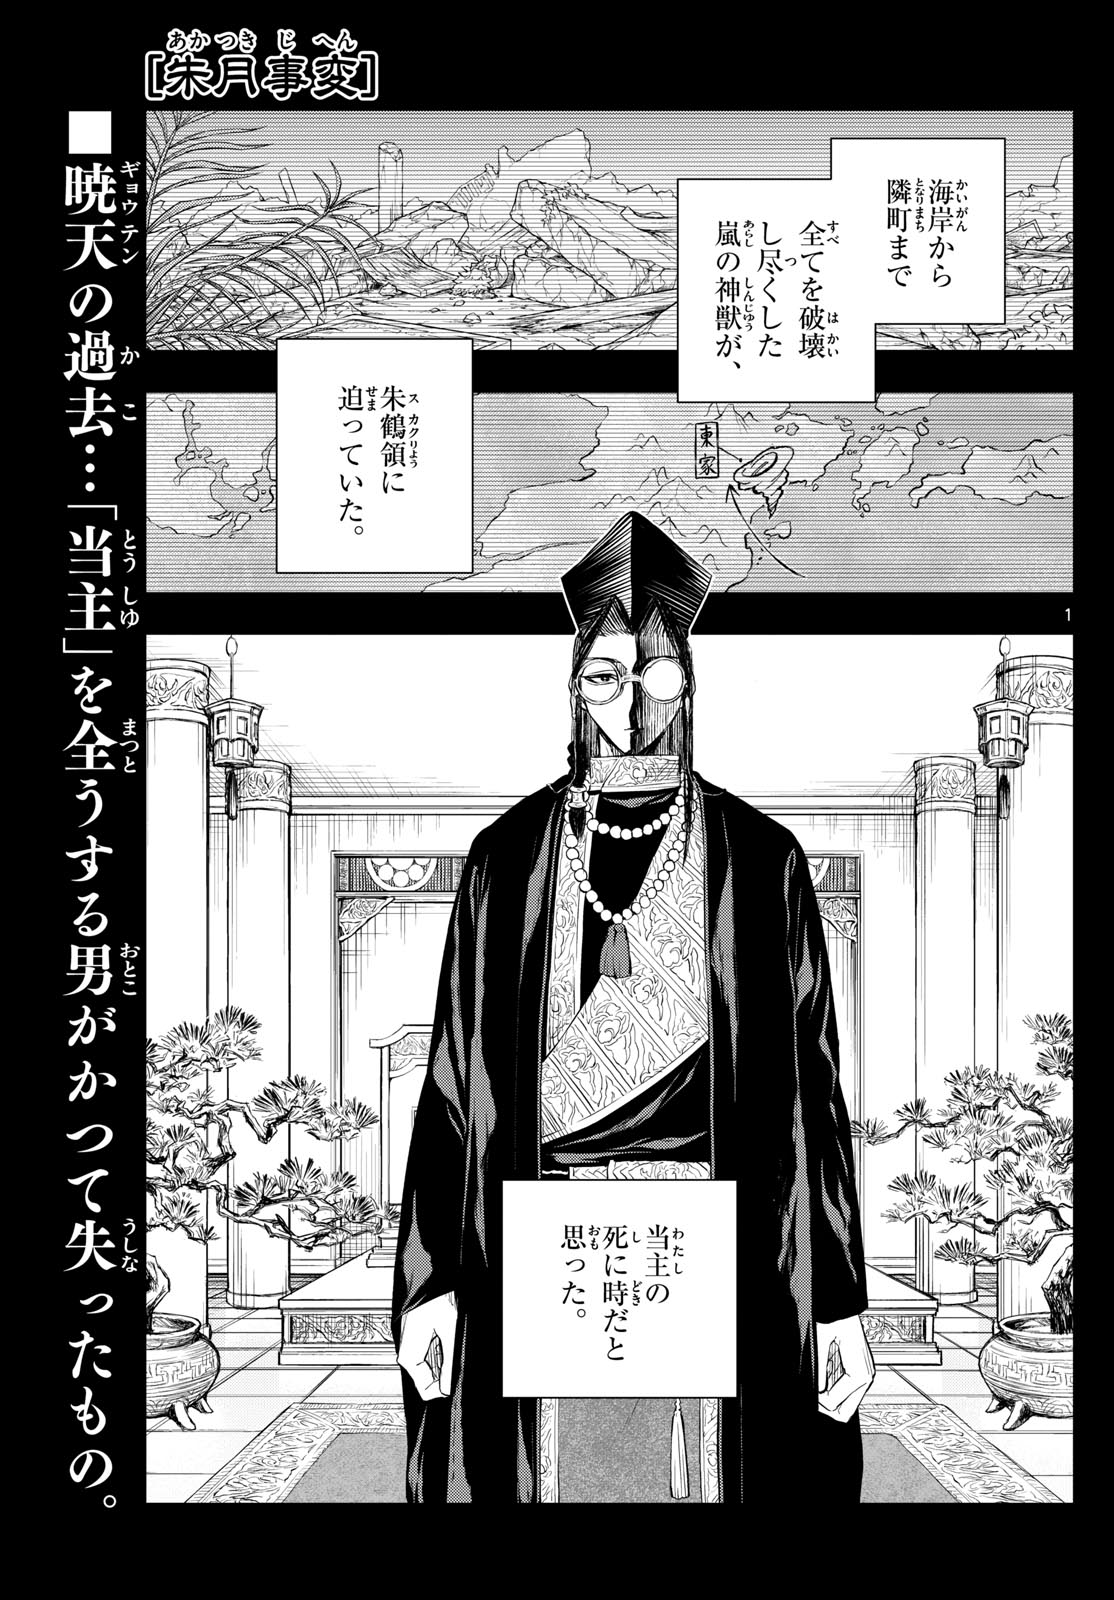 Akatsuki Jihen - Chapter 43 - Page 1